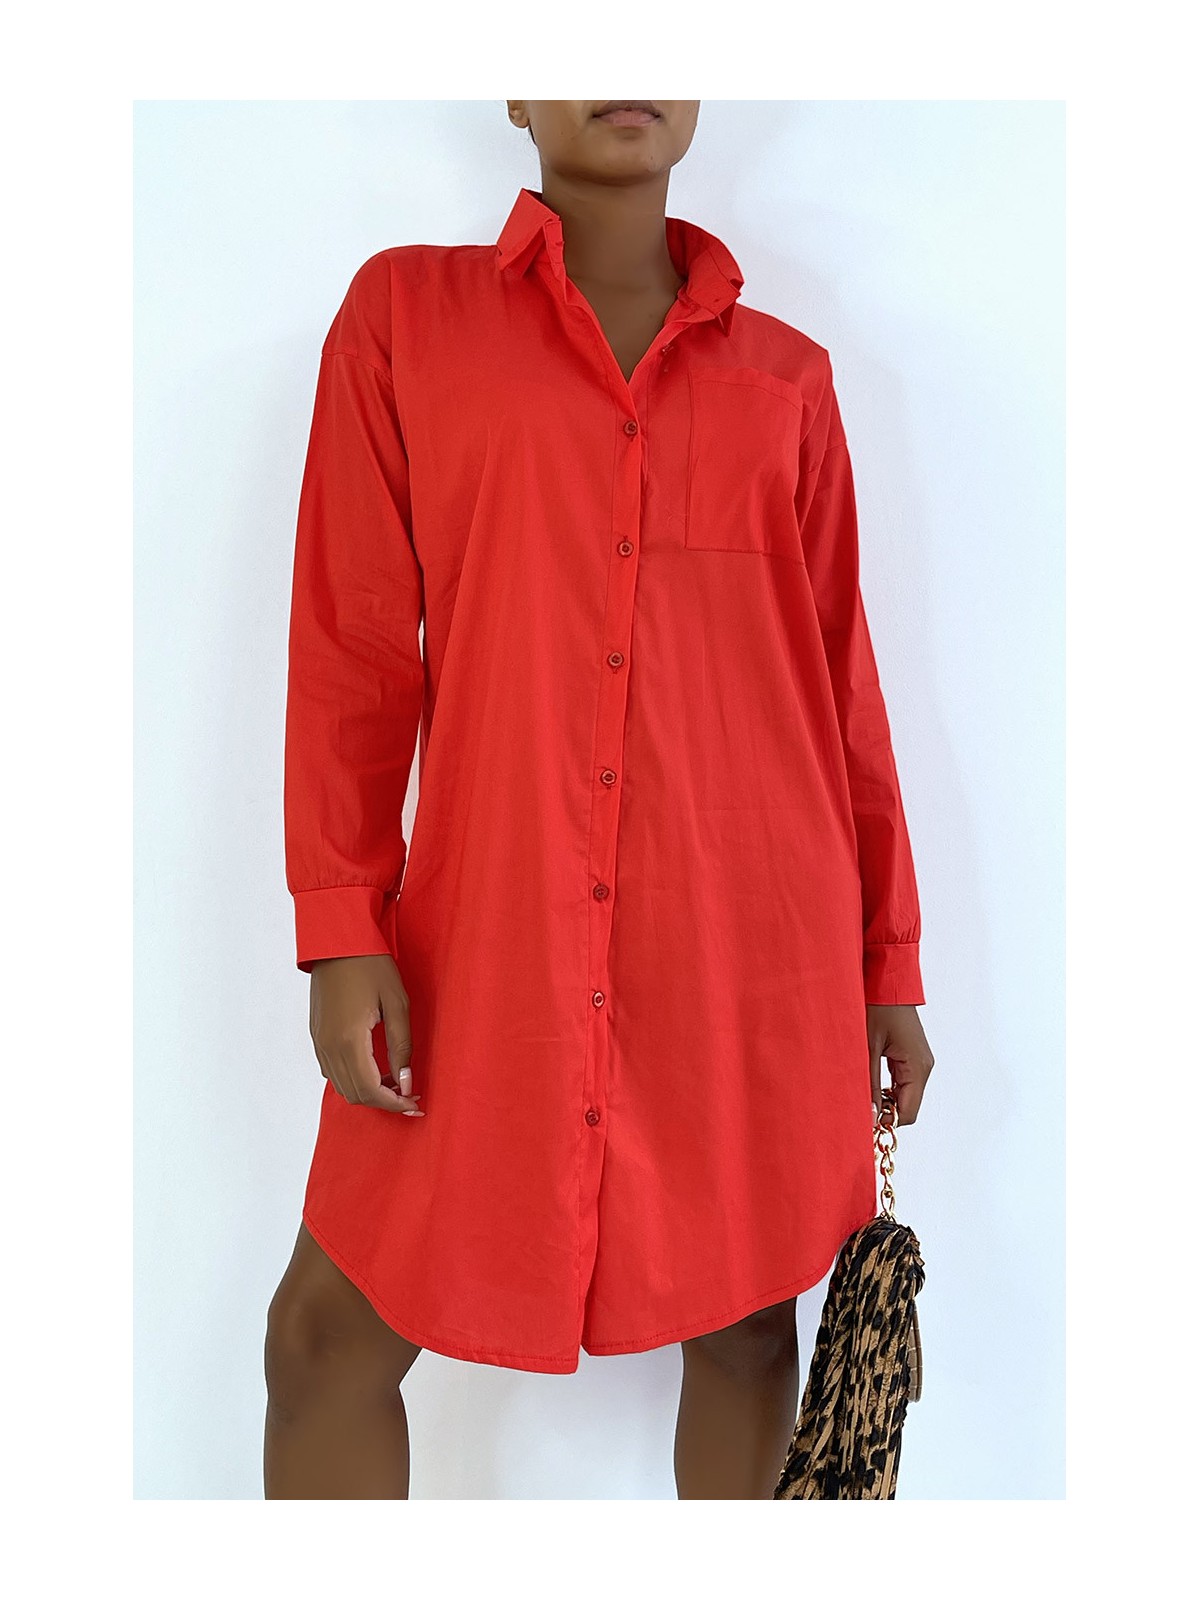 LoLLue robe chemise rouge avec poche. Chemise femme - 4